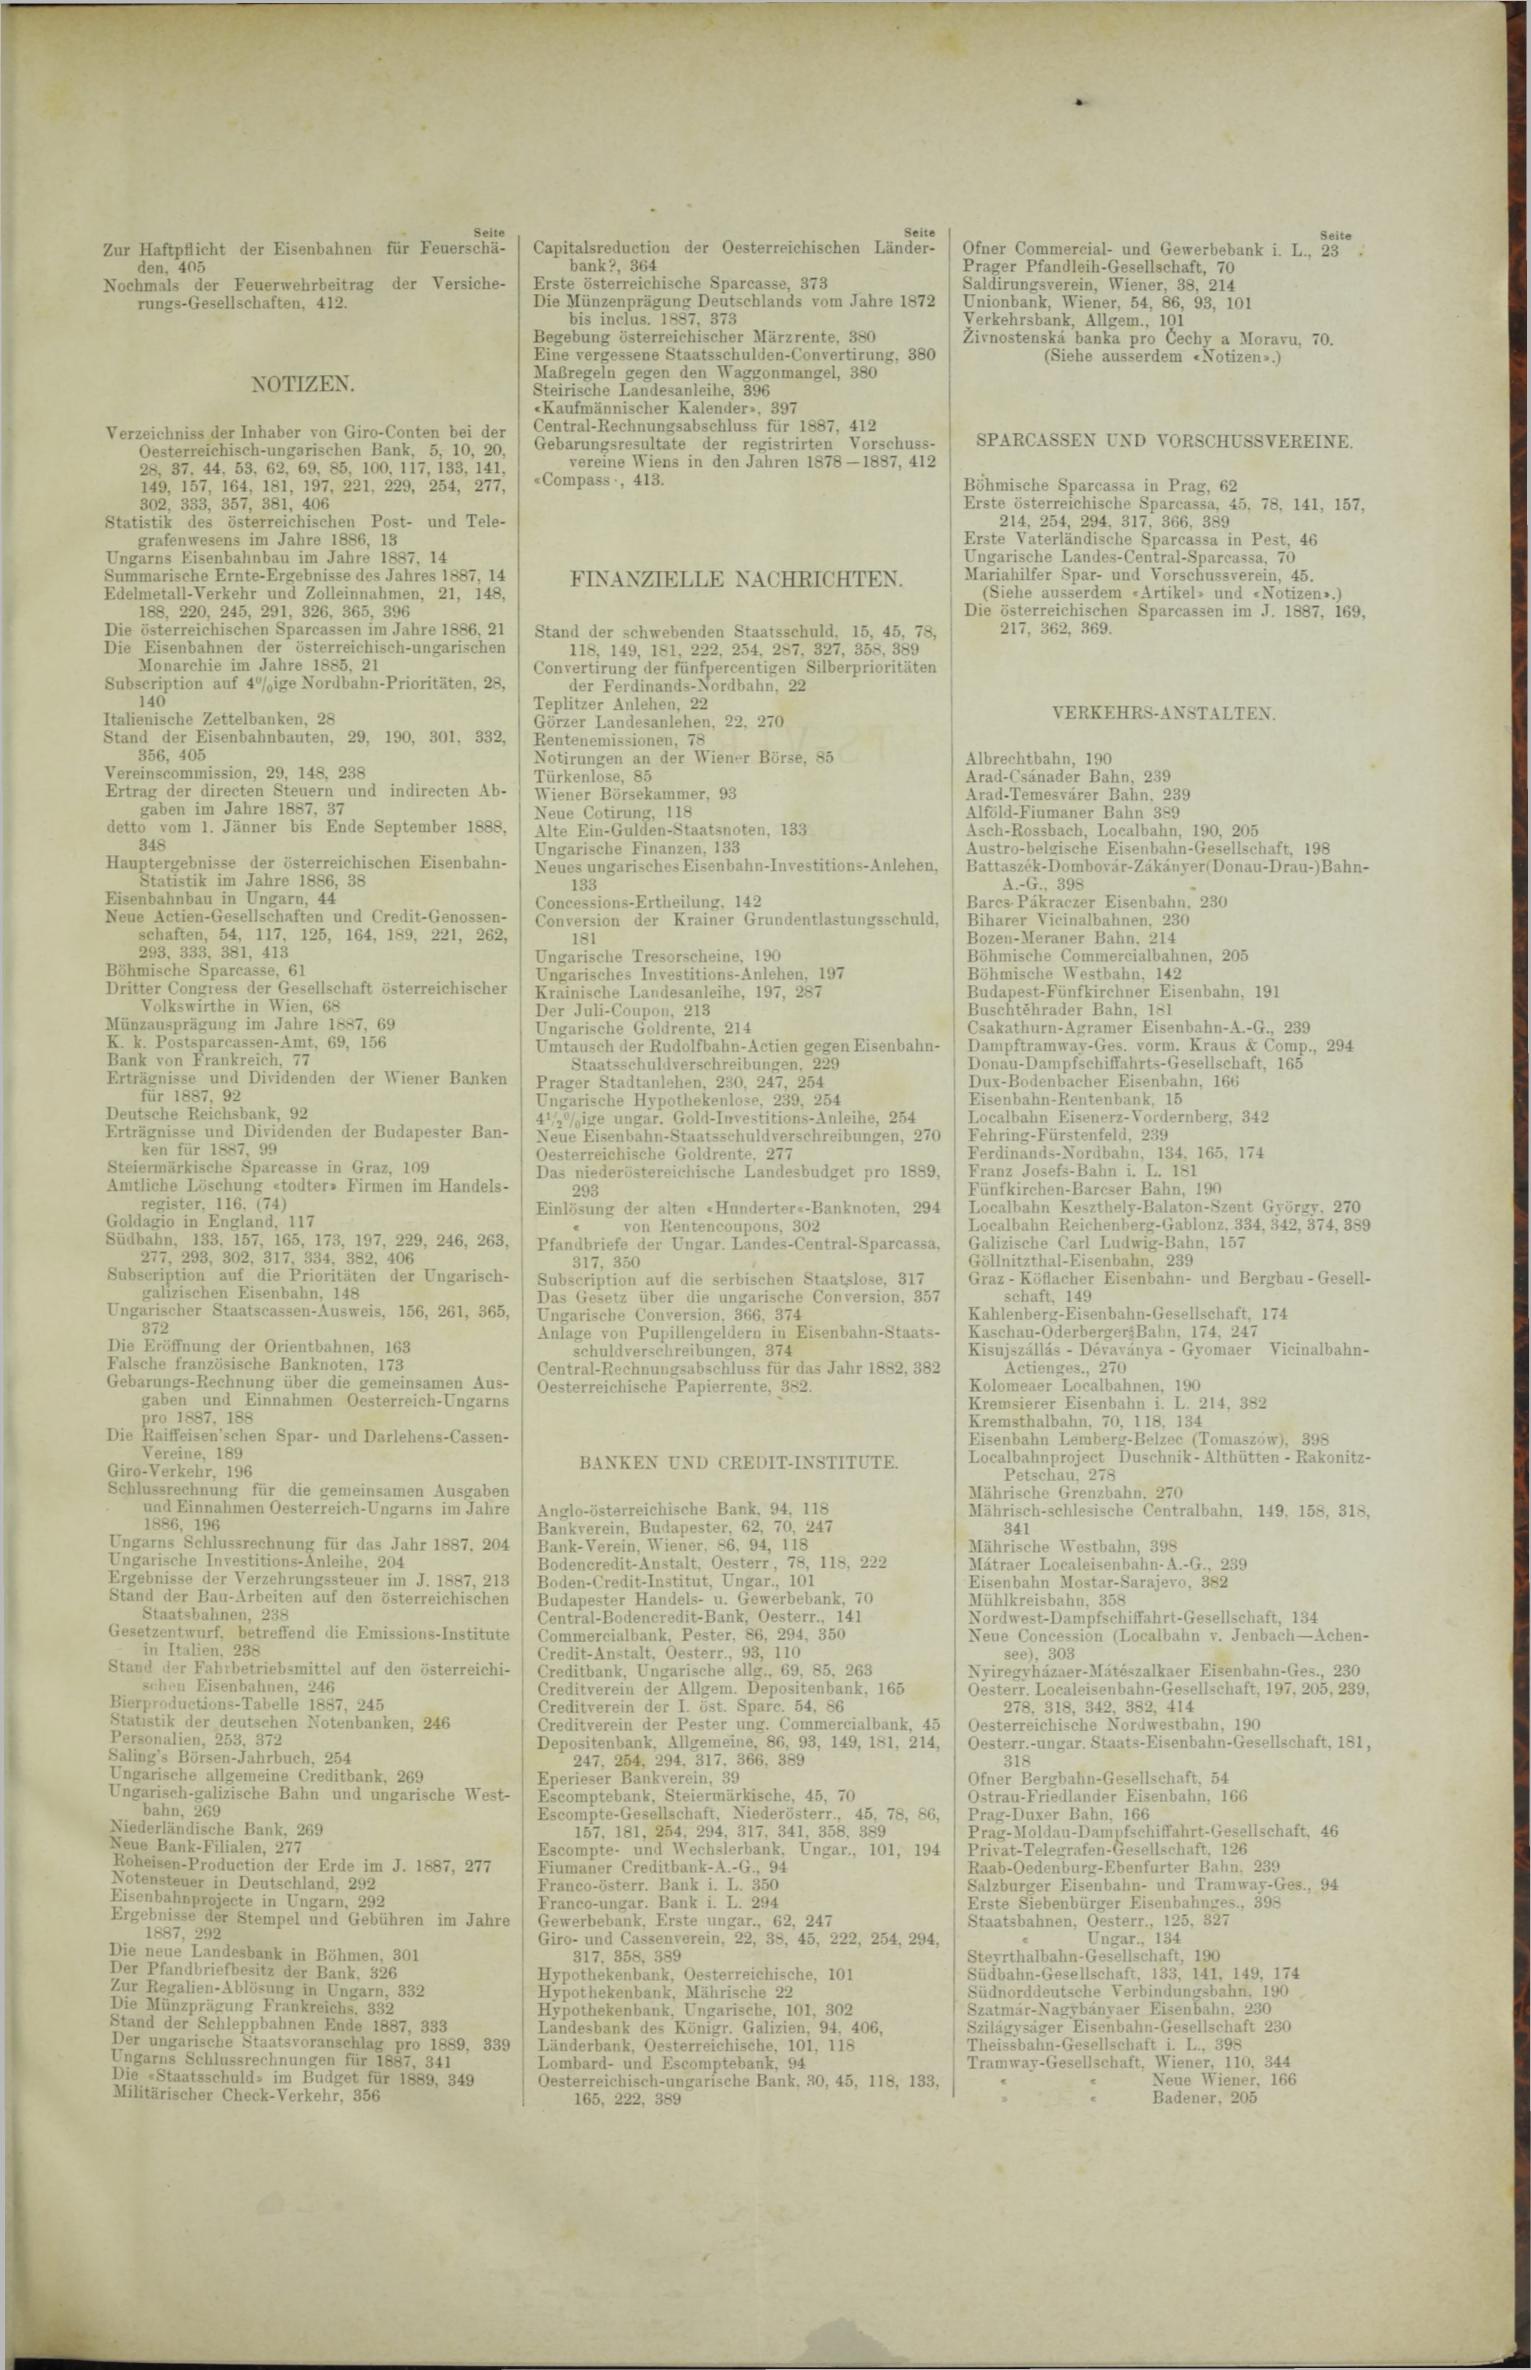 Der Tresor 03.05.1888 - Seite 11